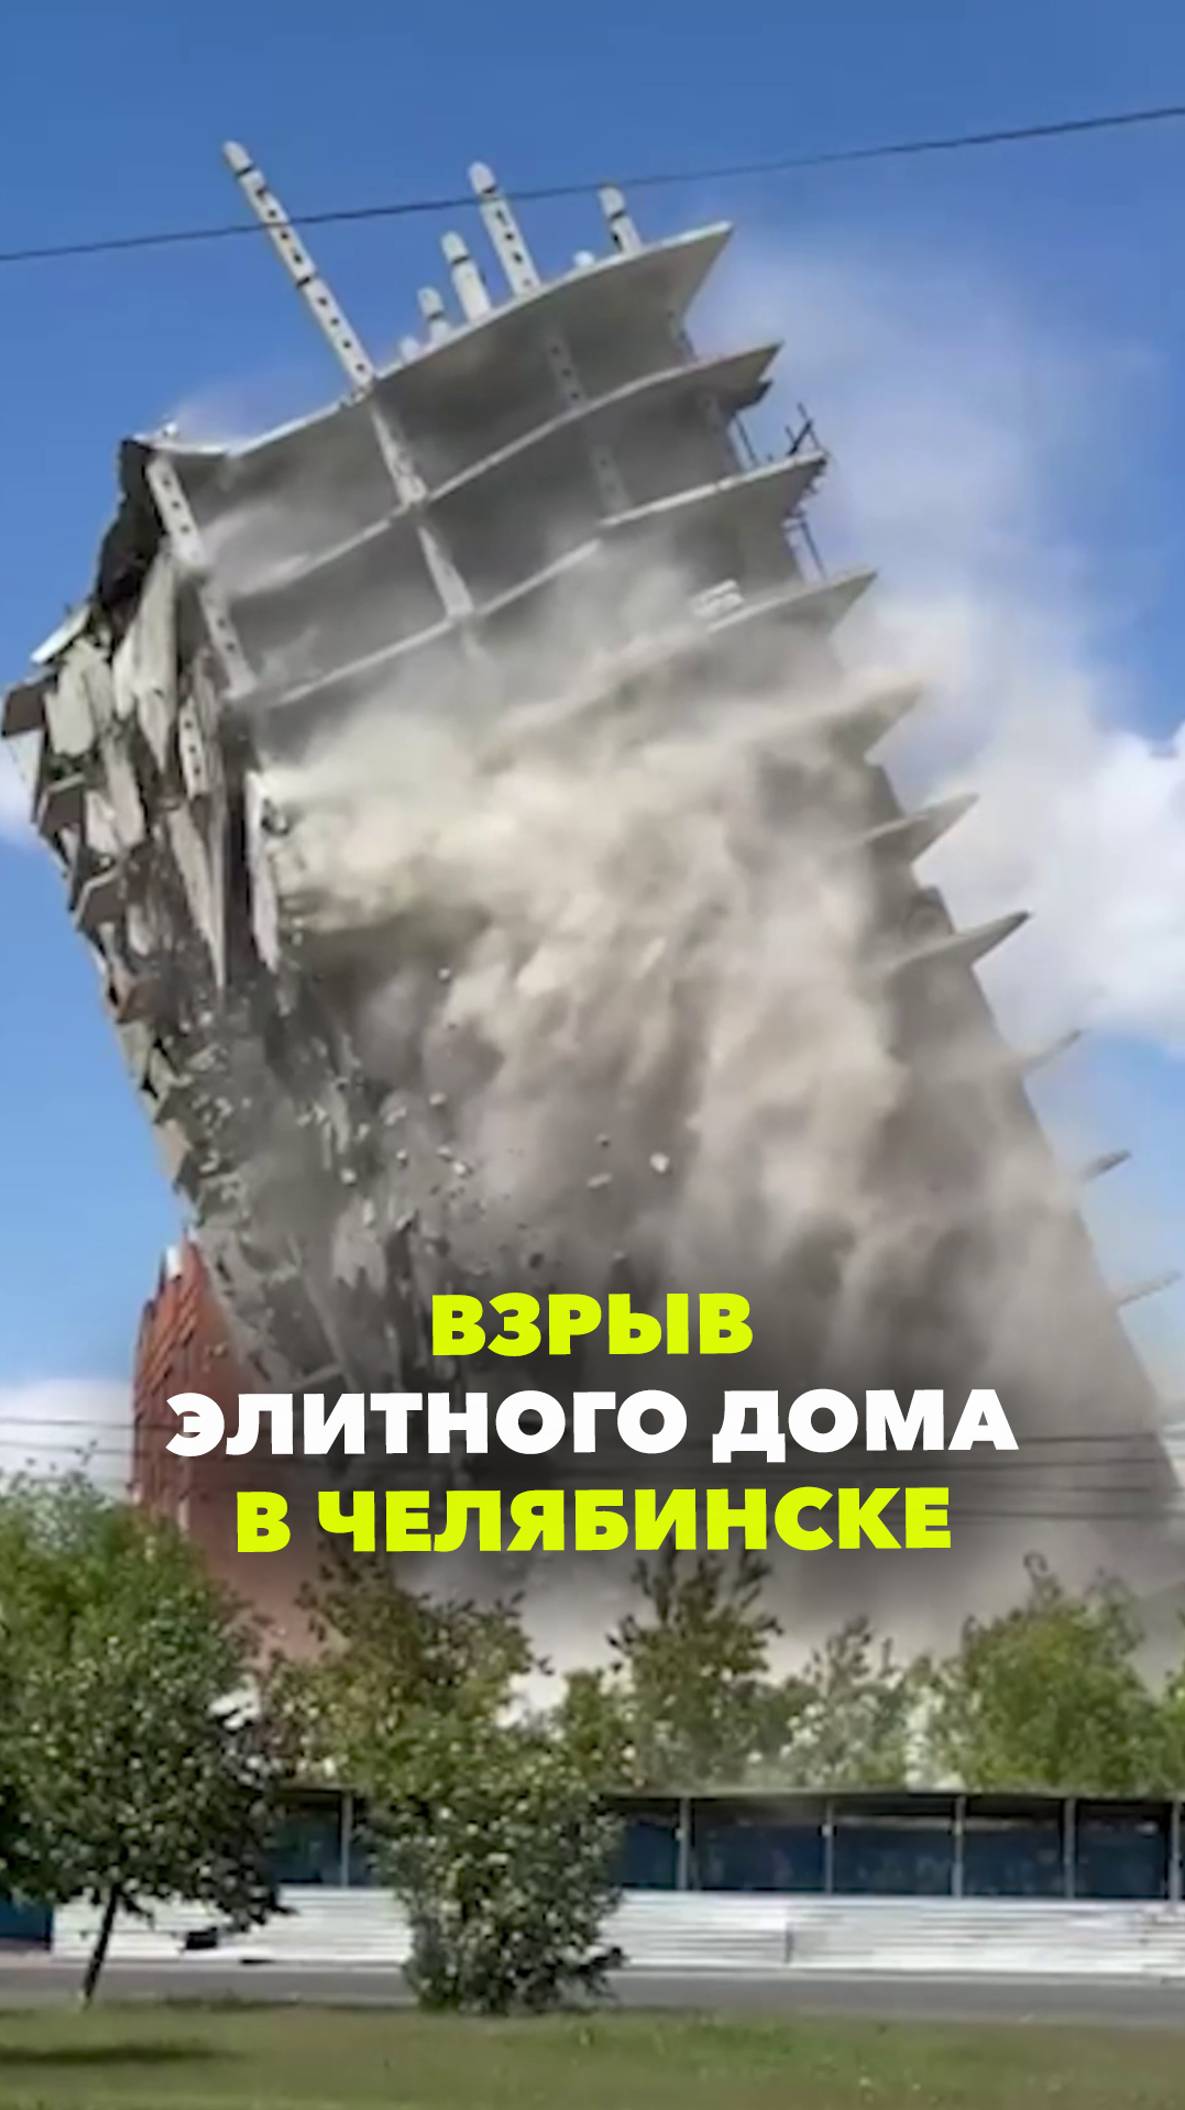 В Челябинске взорвали недостроенный элитный дом. ЖК "Княжеский" стоял без дела 16 лет и ушёл красиво